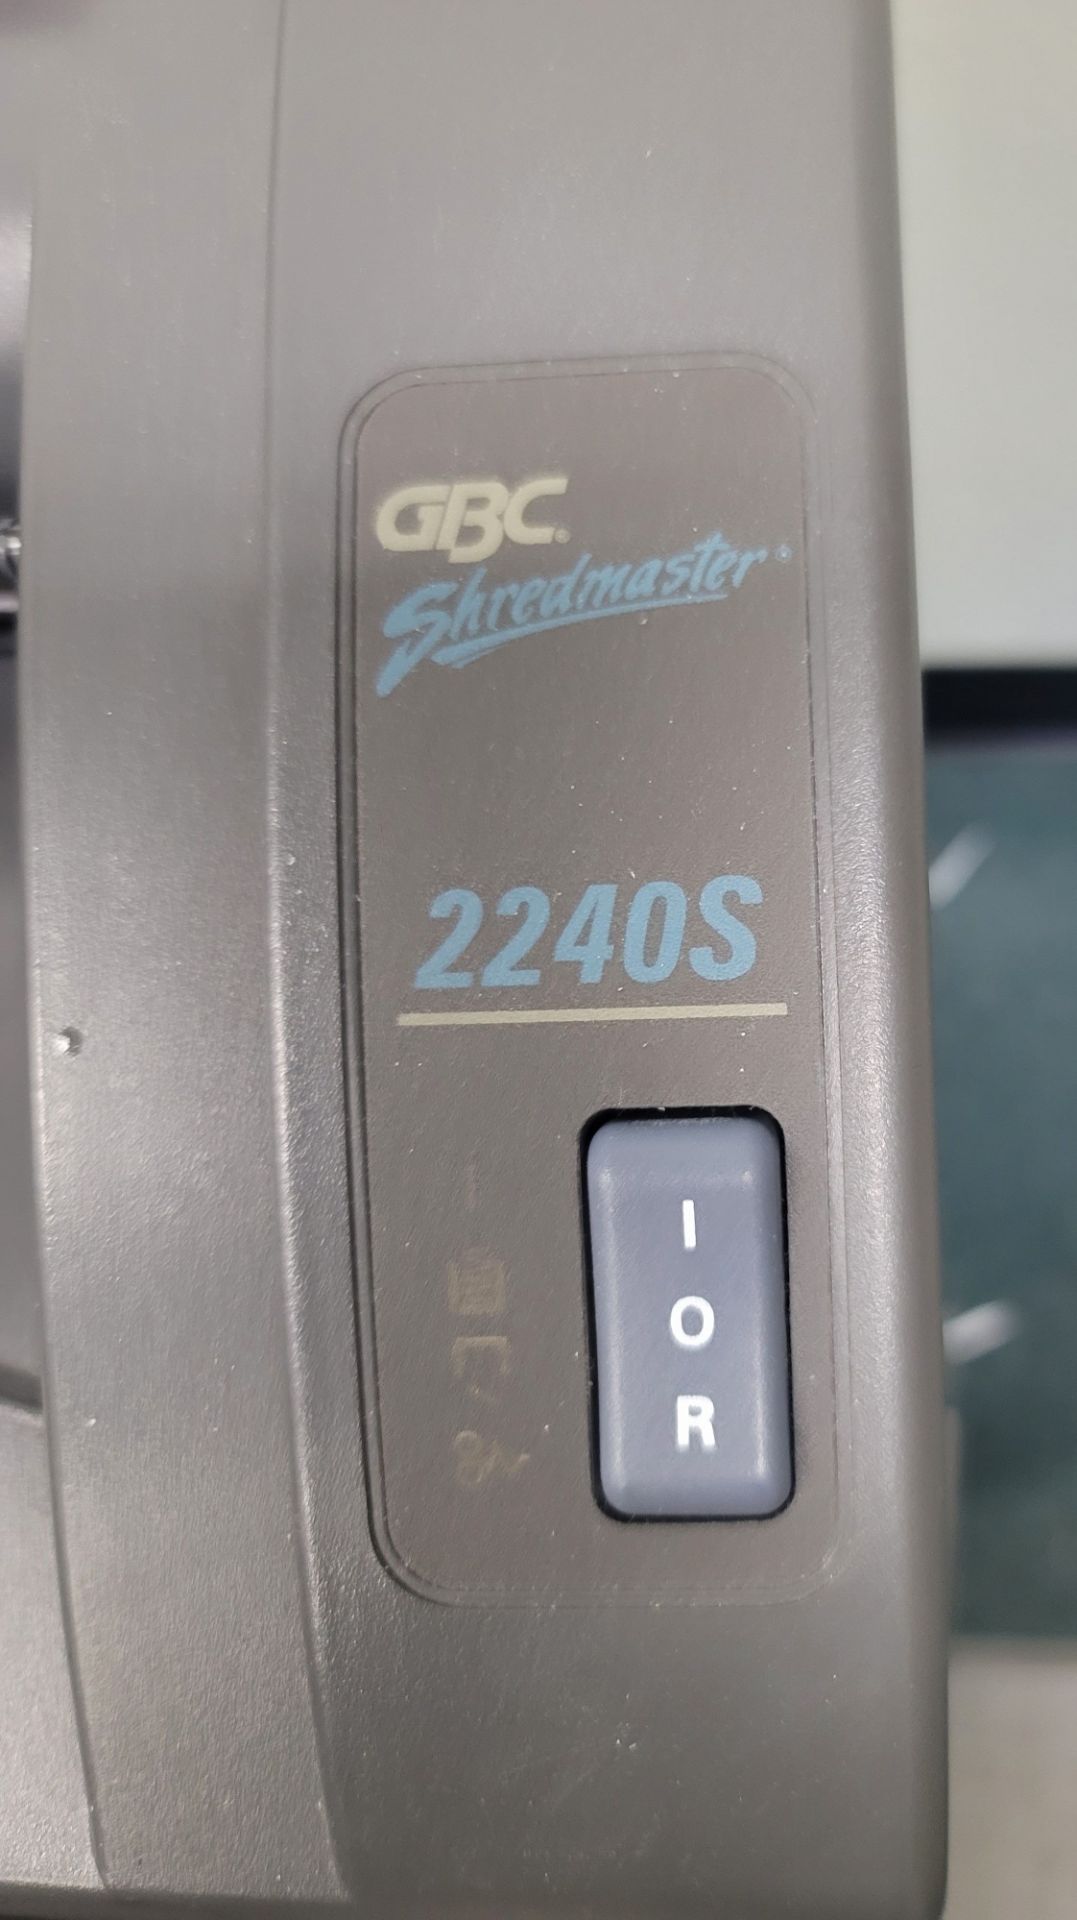 GBC SHREDMASTER 2240S PAPER SHREDDER - Image 2 of 2